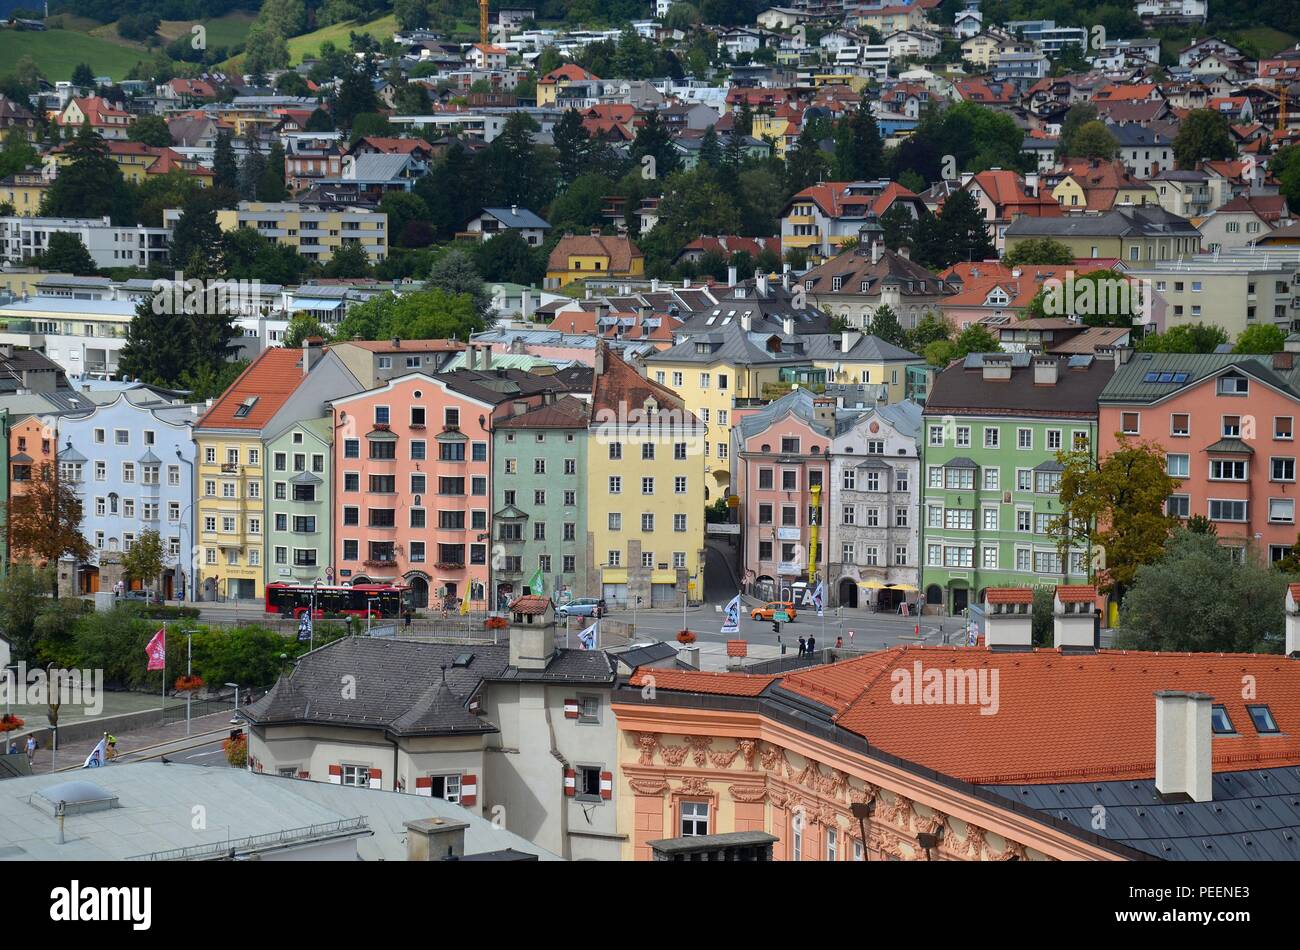 Innsbruck, die Hauptstadt Tirols, Österreich (Autriche) : Blick vom Stadtturm auf die Vorstadt Hötting Banque D'Images